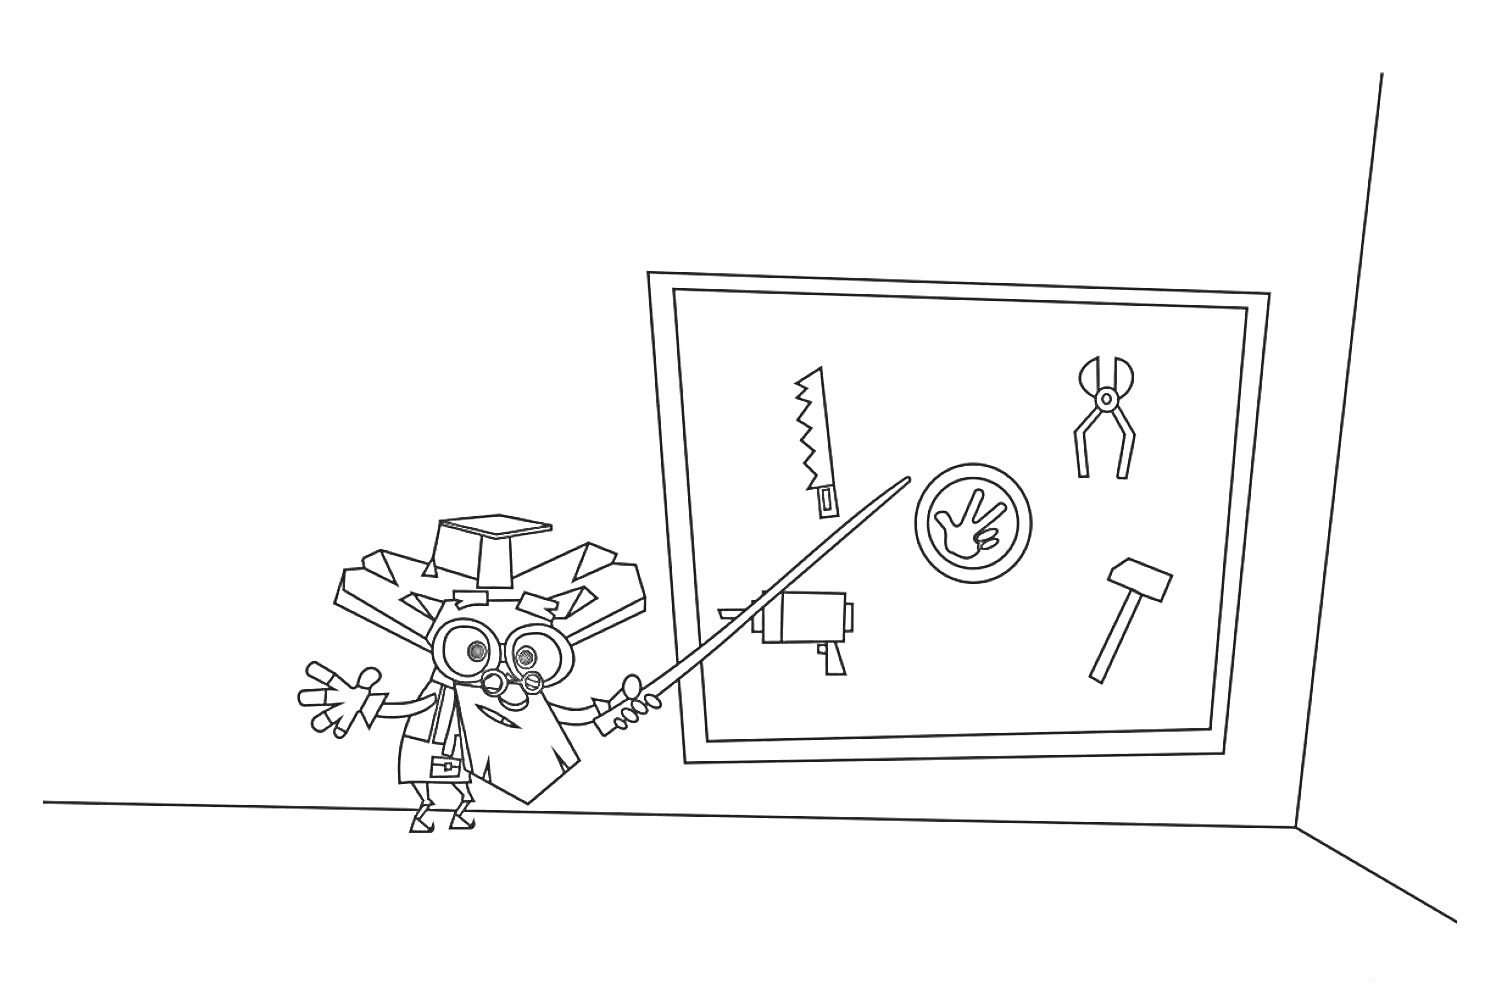 Цветная картинка с изображением персонажа, указывающего на доску с инструментами — пила, плоскогубцы, шуруп, молоток